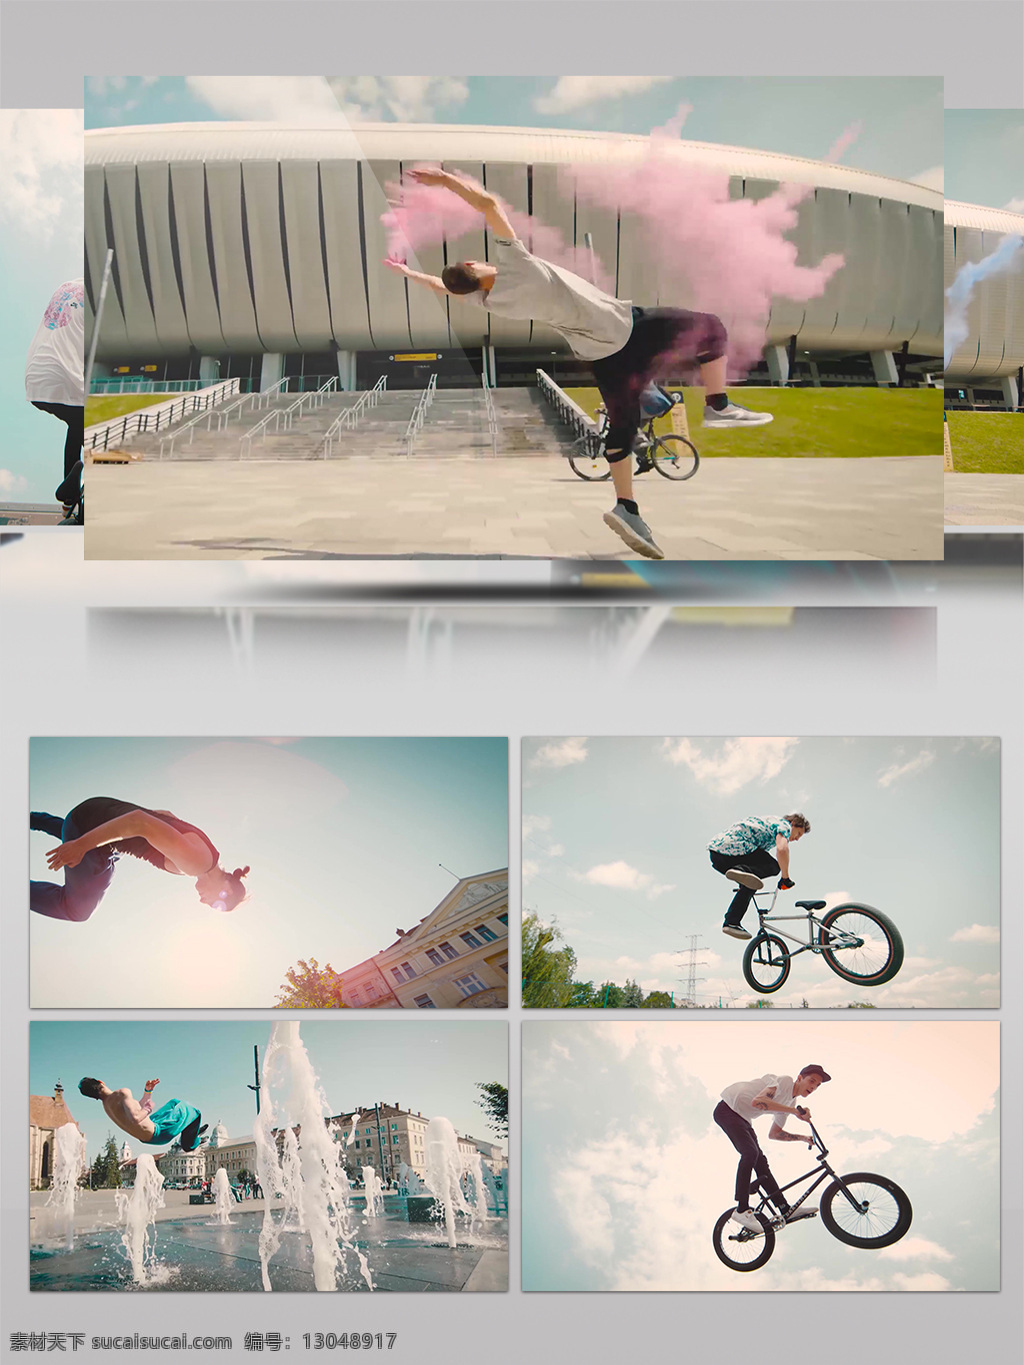 4k 人文 艺术 慢镜头 下 体育运动 体育 运动 生活 另类 行为 跑酷 翻跟头 自行车表演 追求 灵感